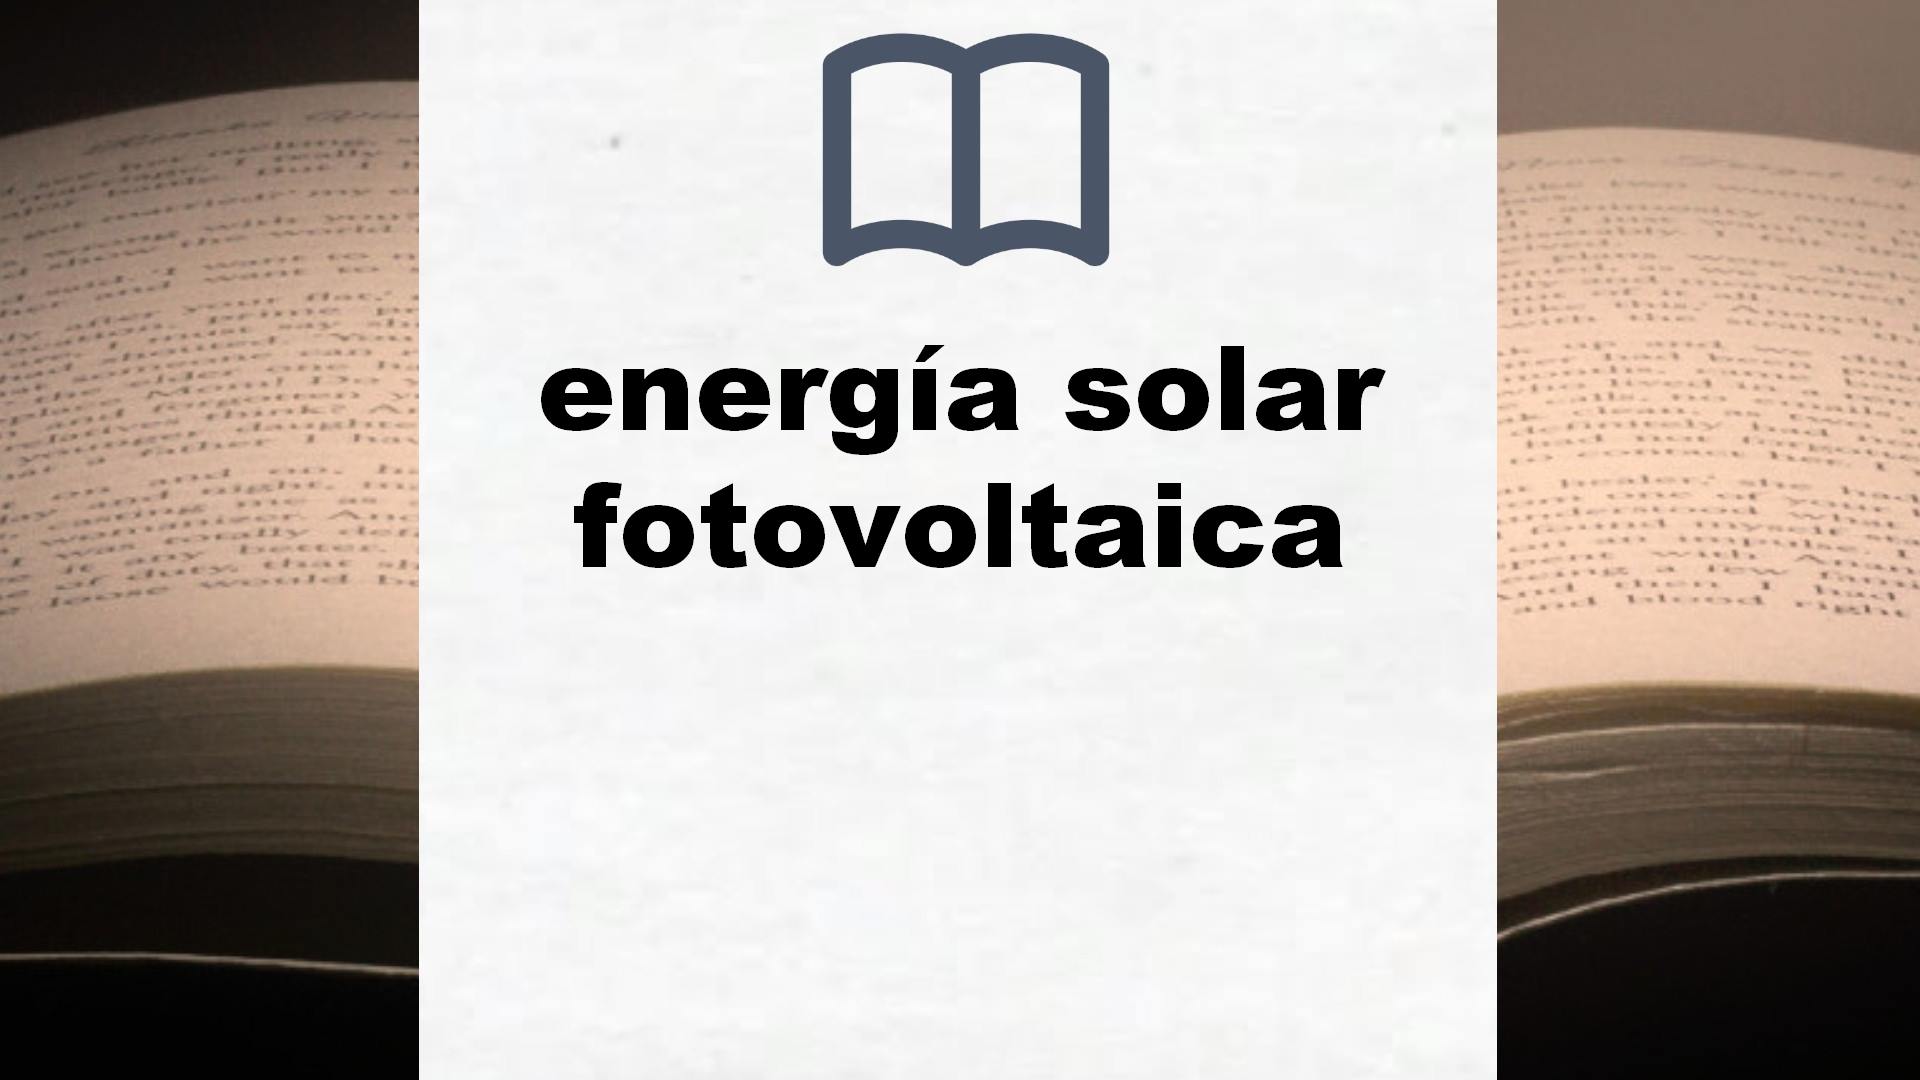 Libros sobre energía solar fotovoltaica